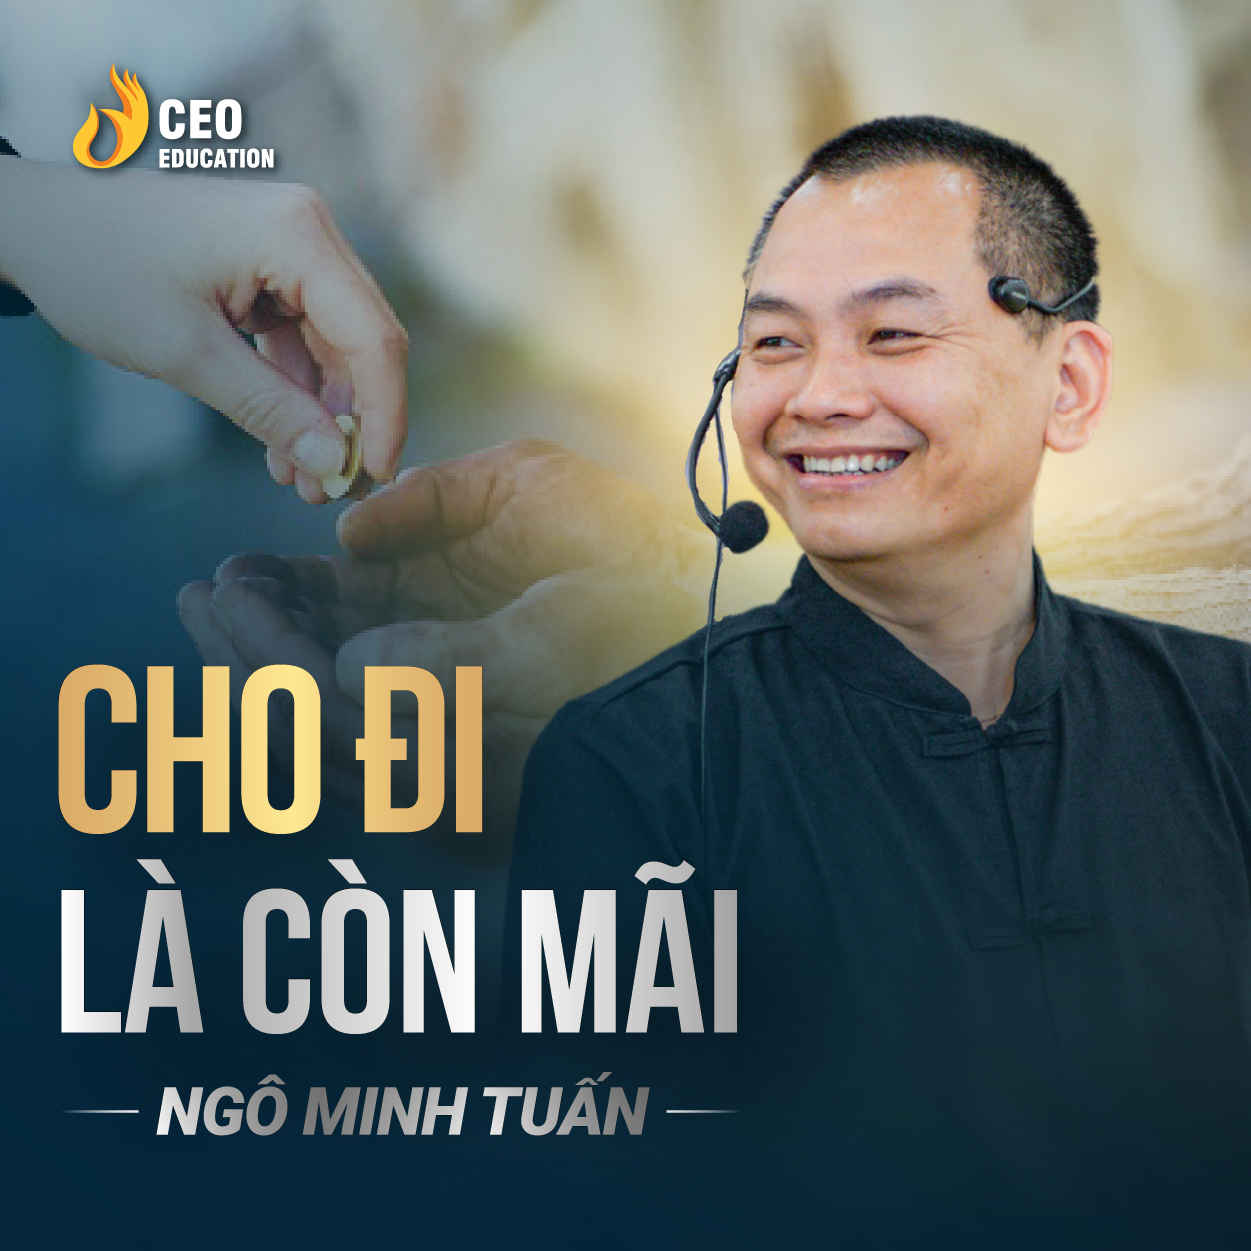 Hãy cho đi để nhận lại được những điều tốt đẹp | Ngô Minh Tuấn | Học Viện CEO Việt Nam